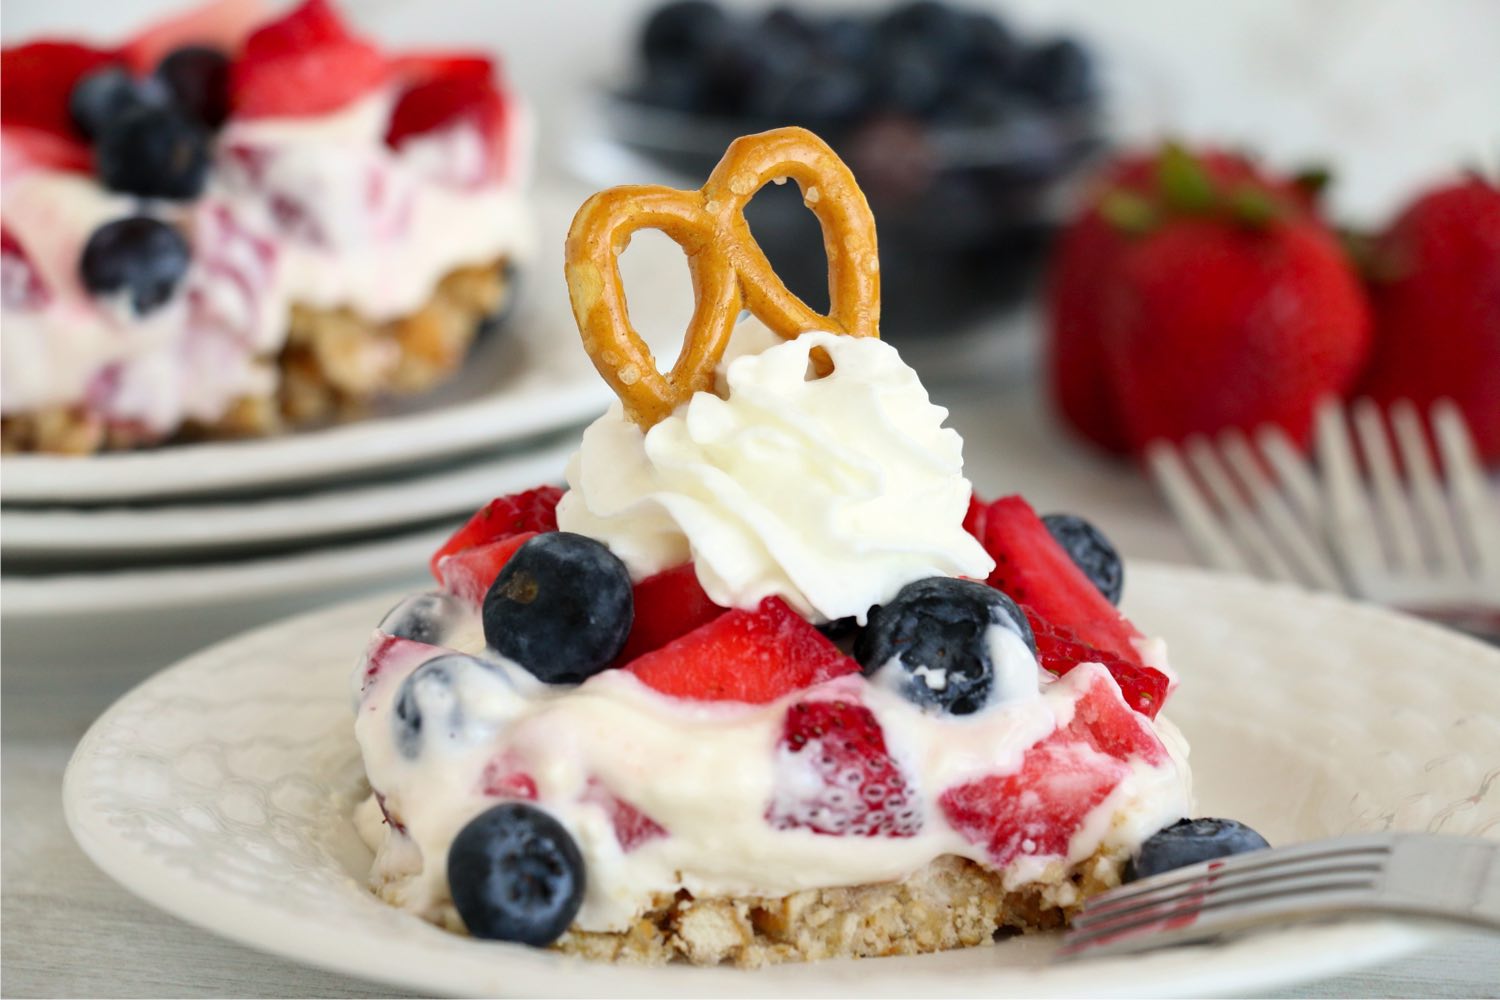 pretzel dessert with fresh berries